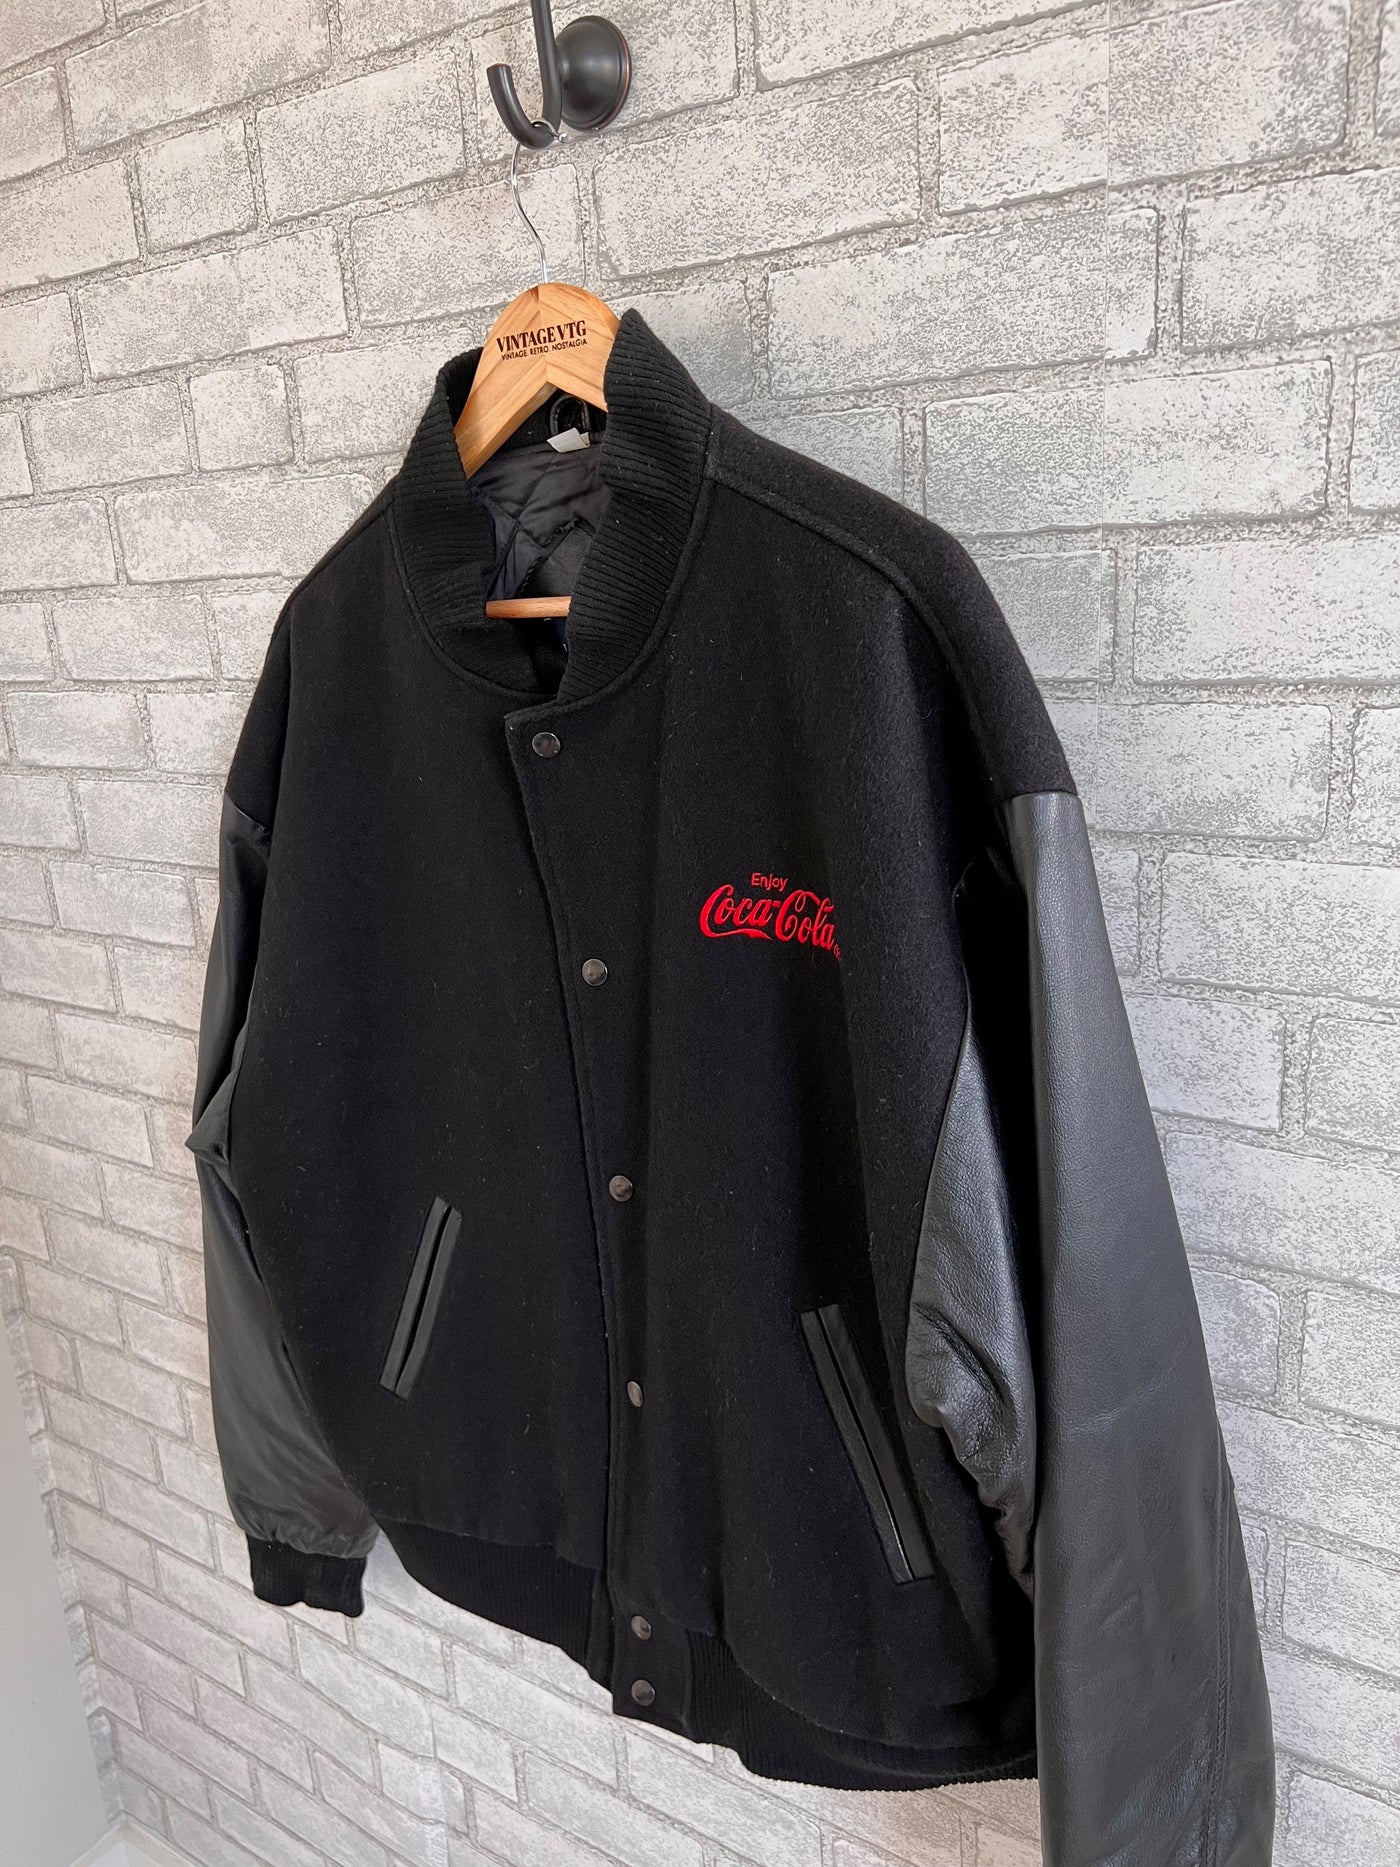 Vintage Black Wool & Leather Coca Cola Letterman Style Jacket. Medium